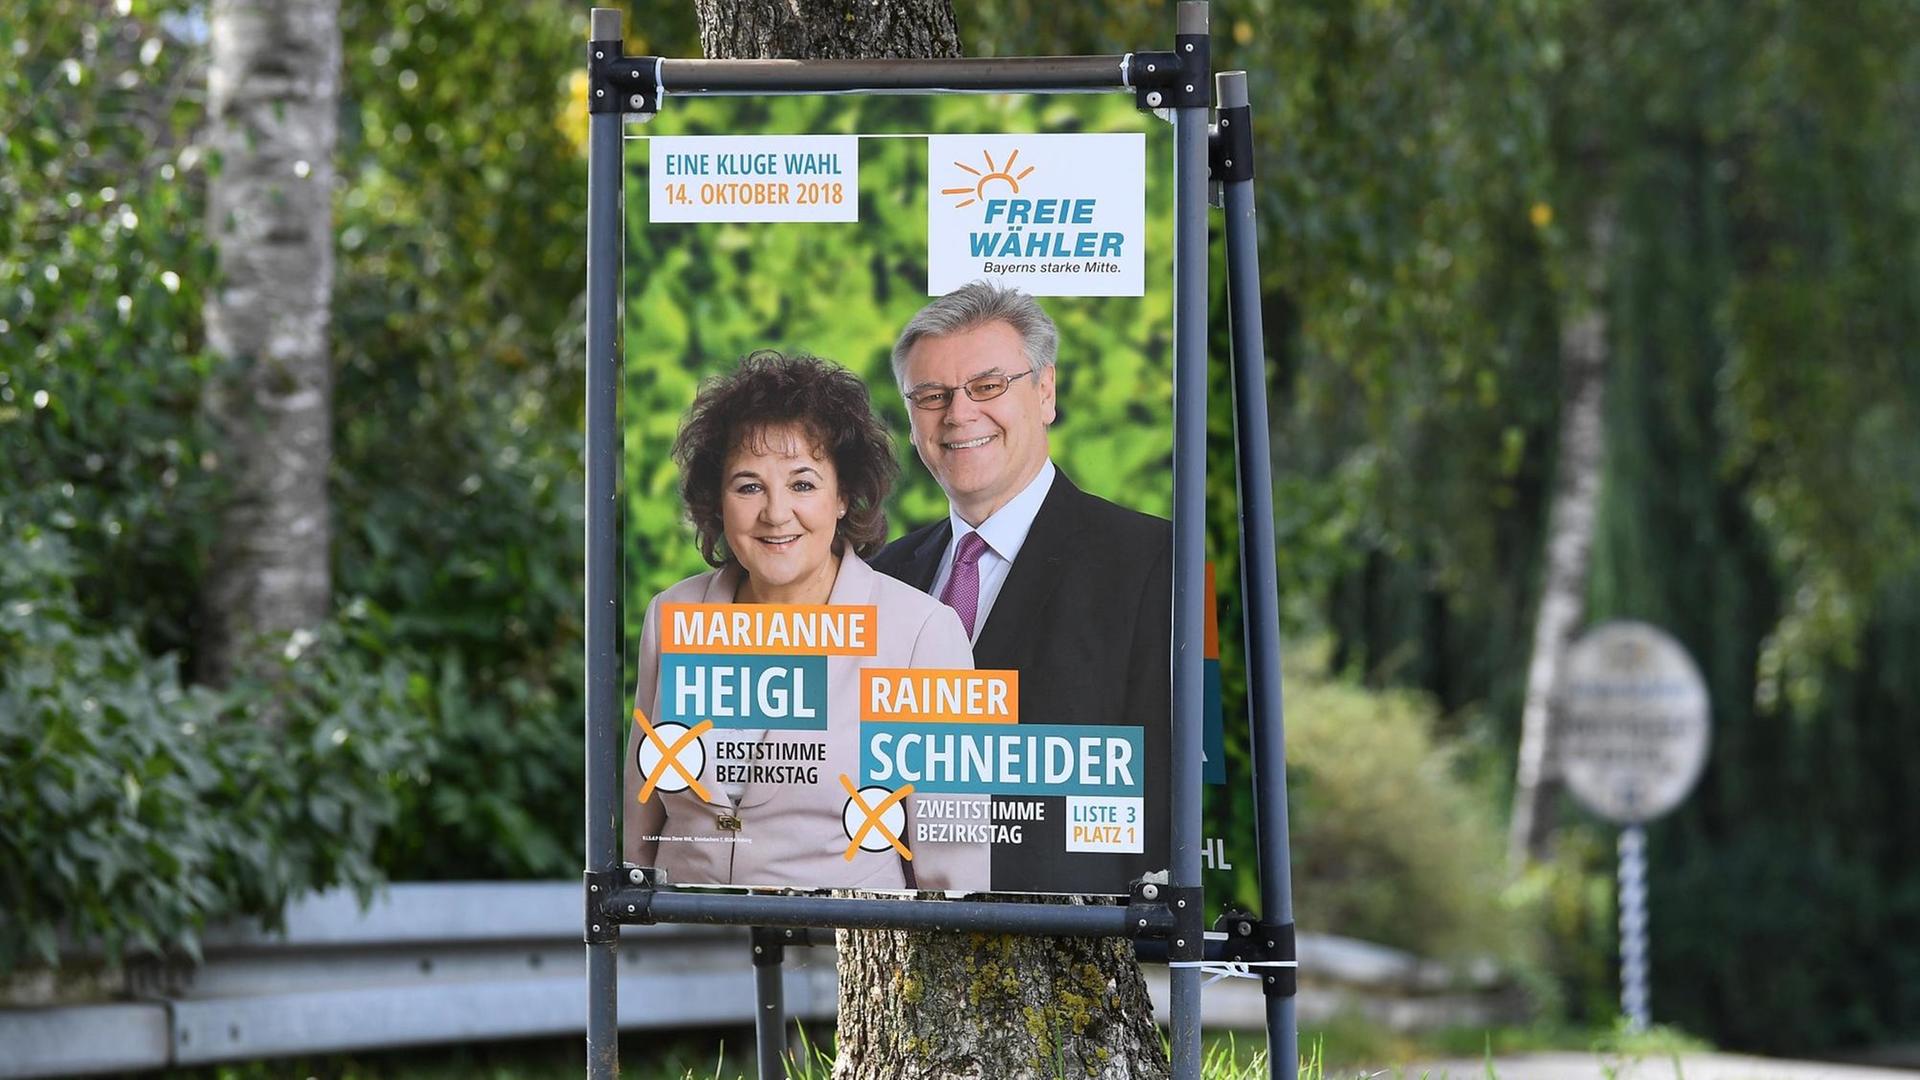 Das Wahlplakat der deutschen Kleinpartei Freie Wähler zeigt die Kandidaten Marianne Heigl und Rainer Schneider